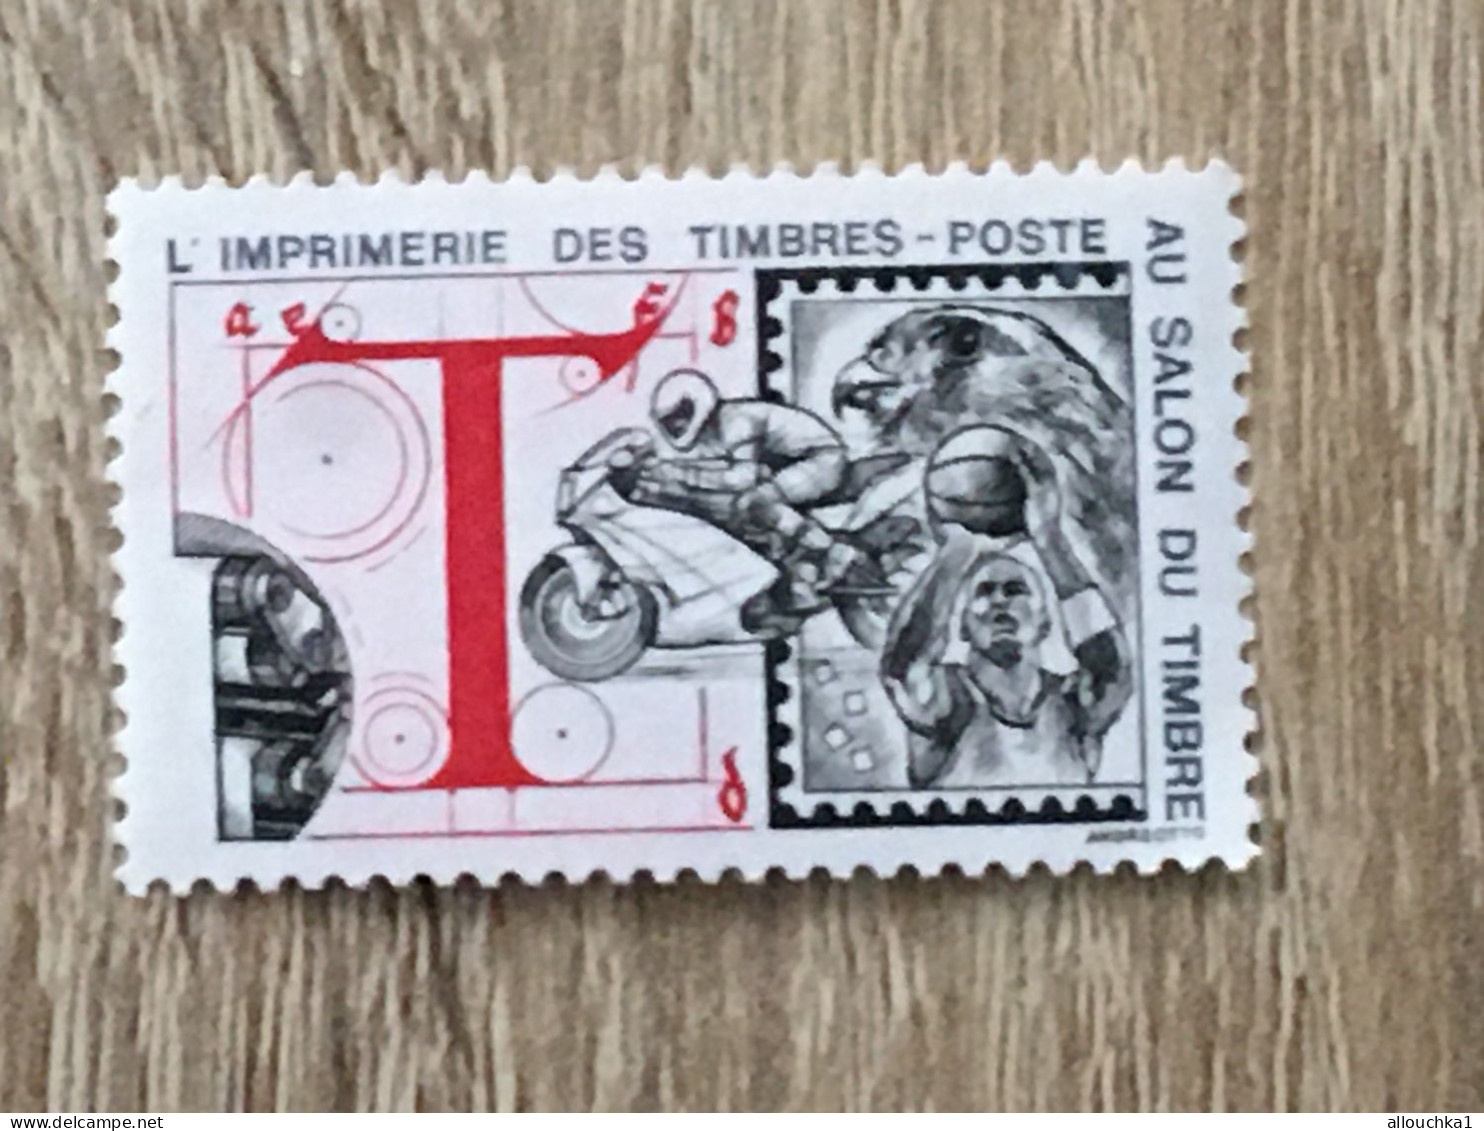 Imprimerie Timbres Poste Au Salon Du Timbre-2 Timbres Vignette**Expo-Philatélique-Erinnophilie-[E]Stamp-Sticker-Viñeta - Esposizioni Filateliche